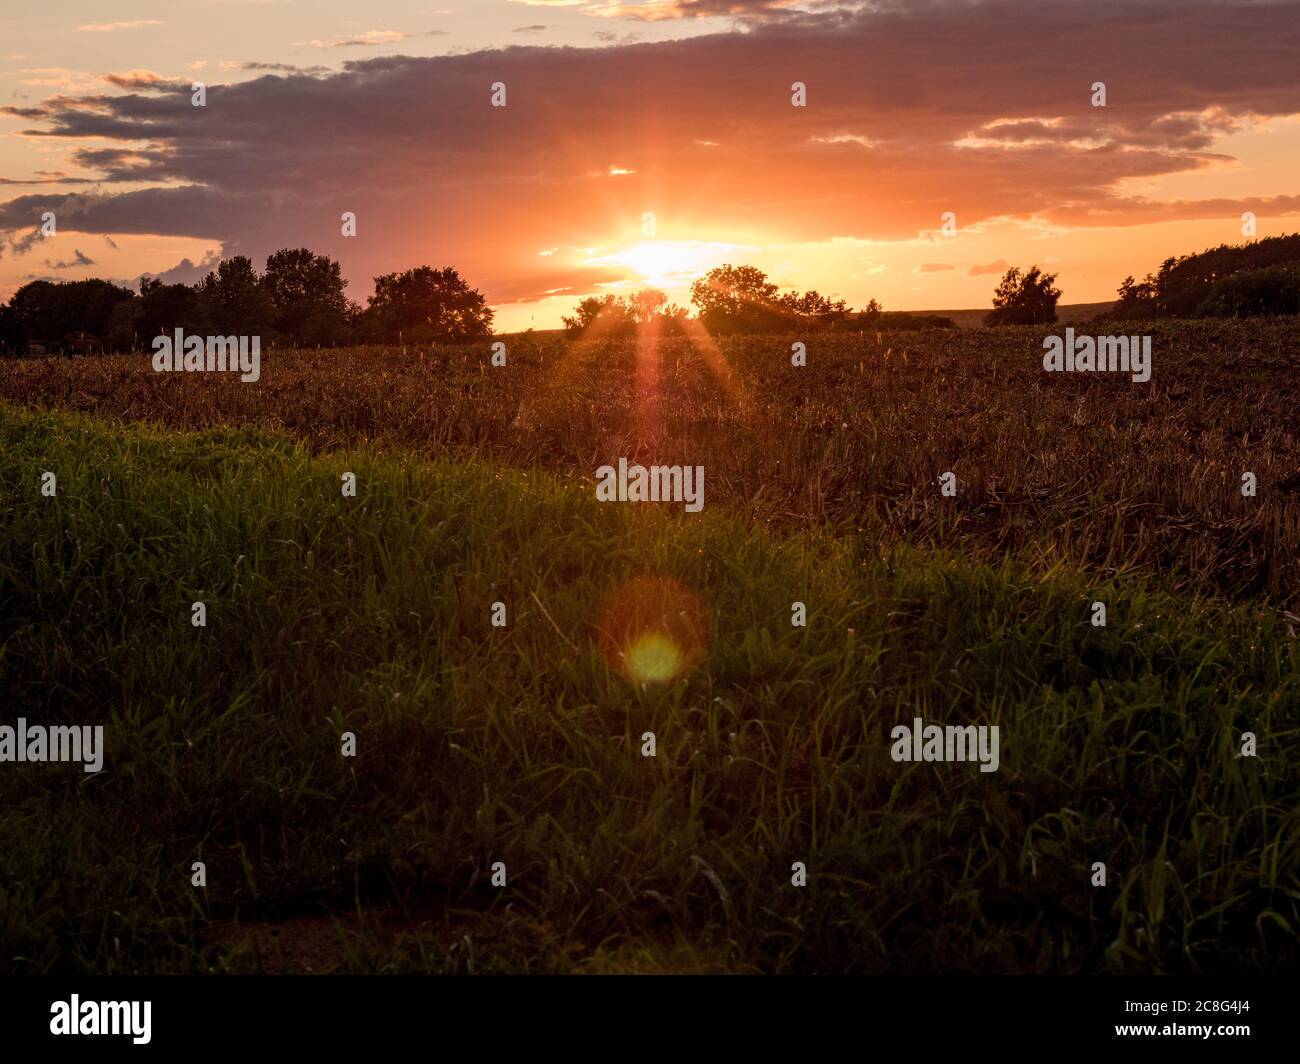 Sonnenuntergang Sonnenaufgang auf einem Getreidefeld auf der Insel Rügen mit einer Farm, Bäumen, Strohballen, roten Mohnblumen nach einem Gewitter Stock Photo